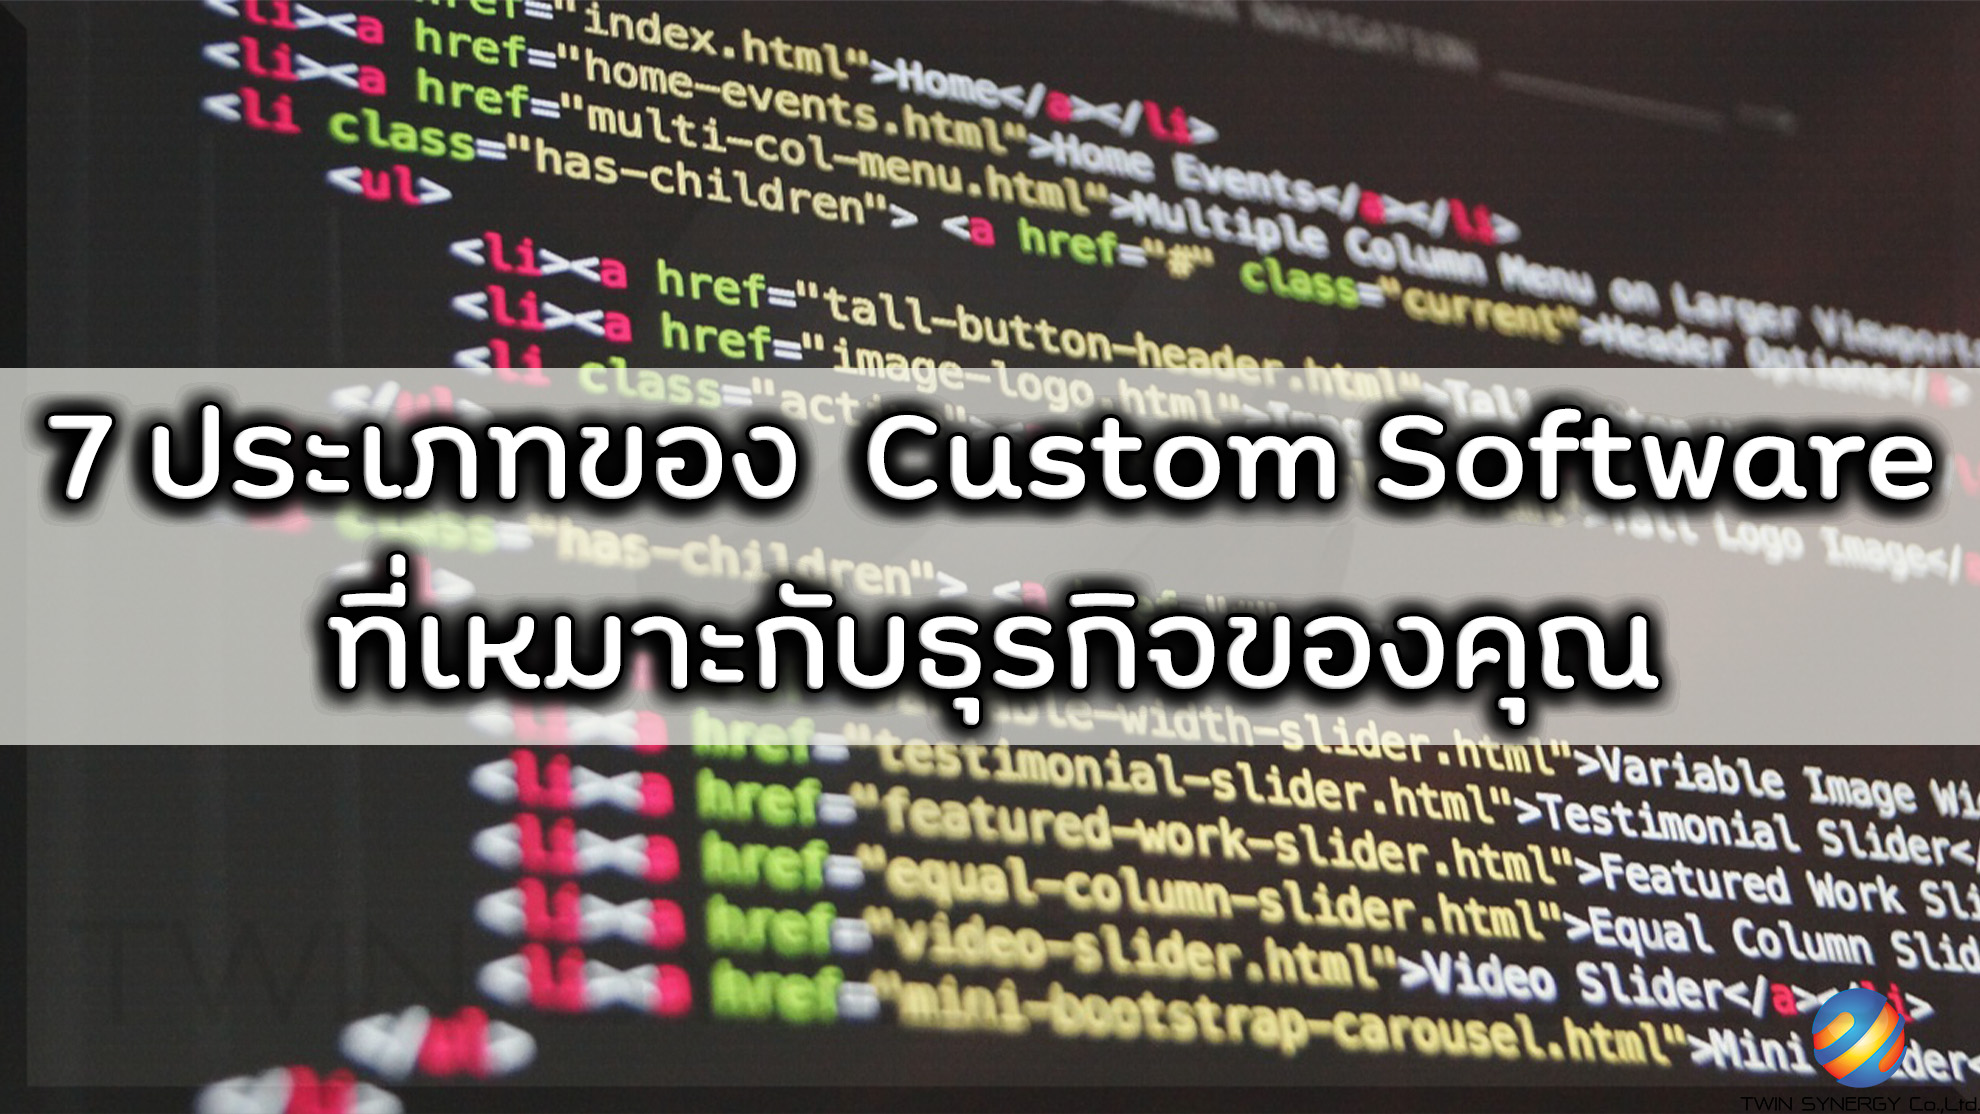 7 ประเภทของ Custom Software ที่นิยมสำหรับธุรกิจ